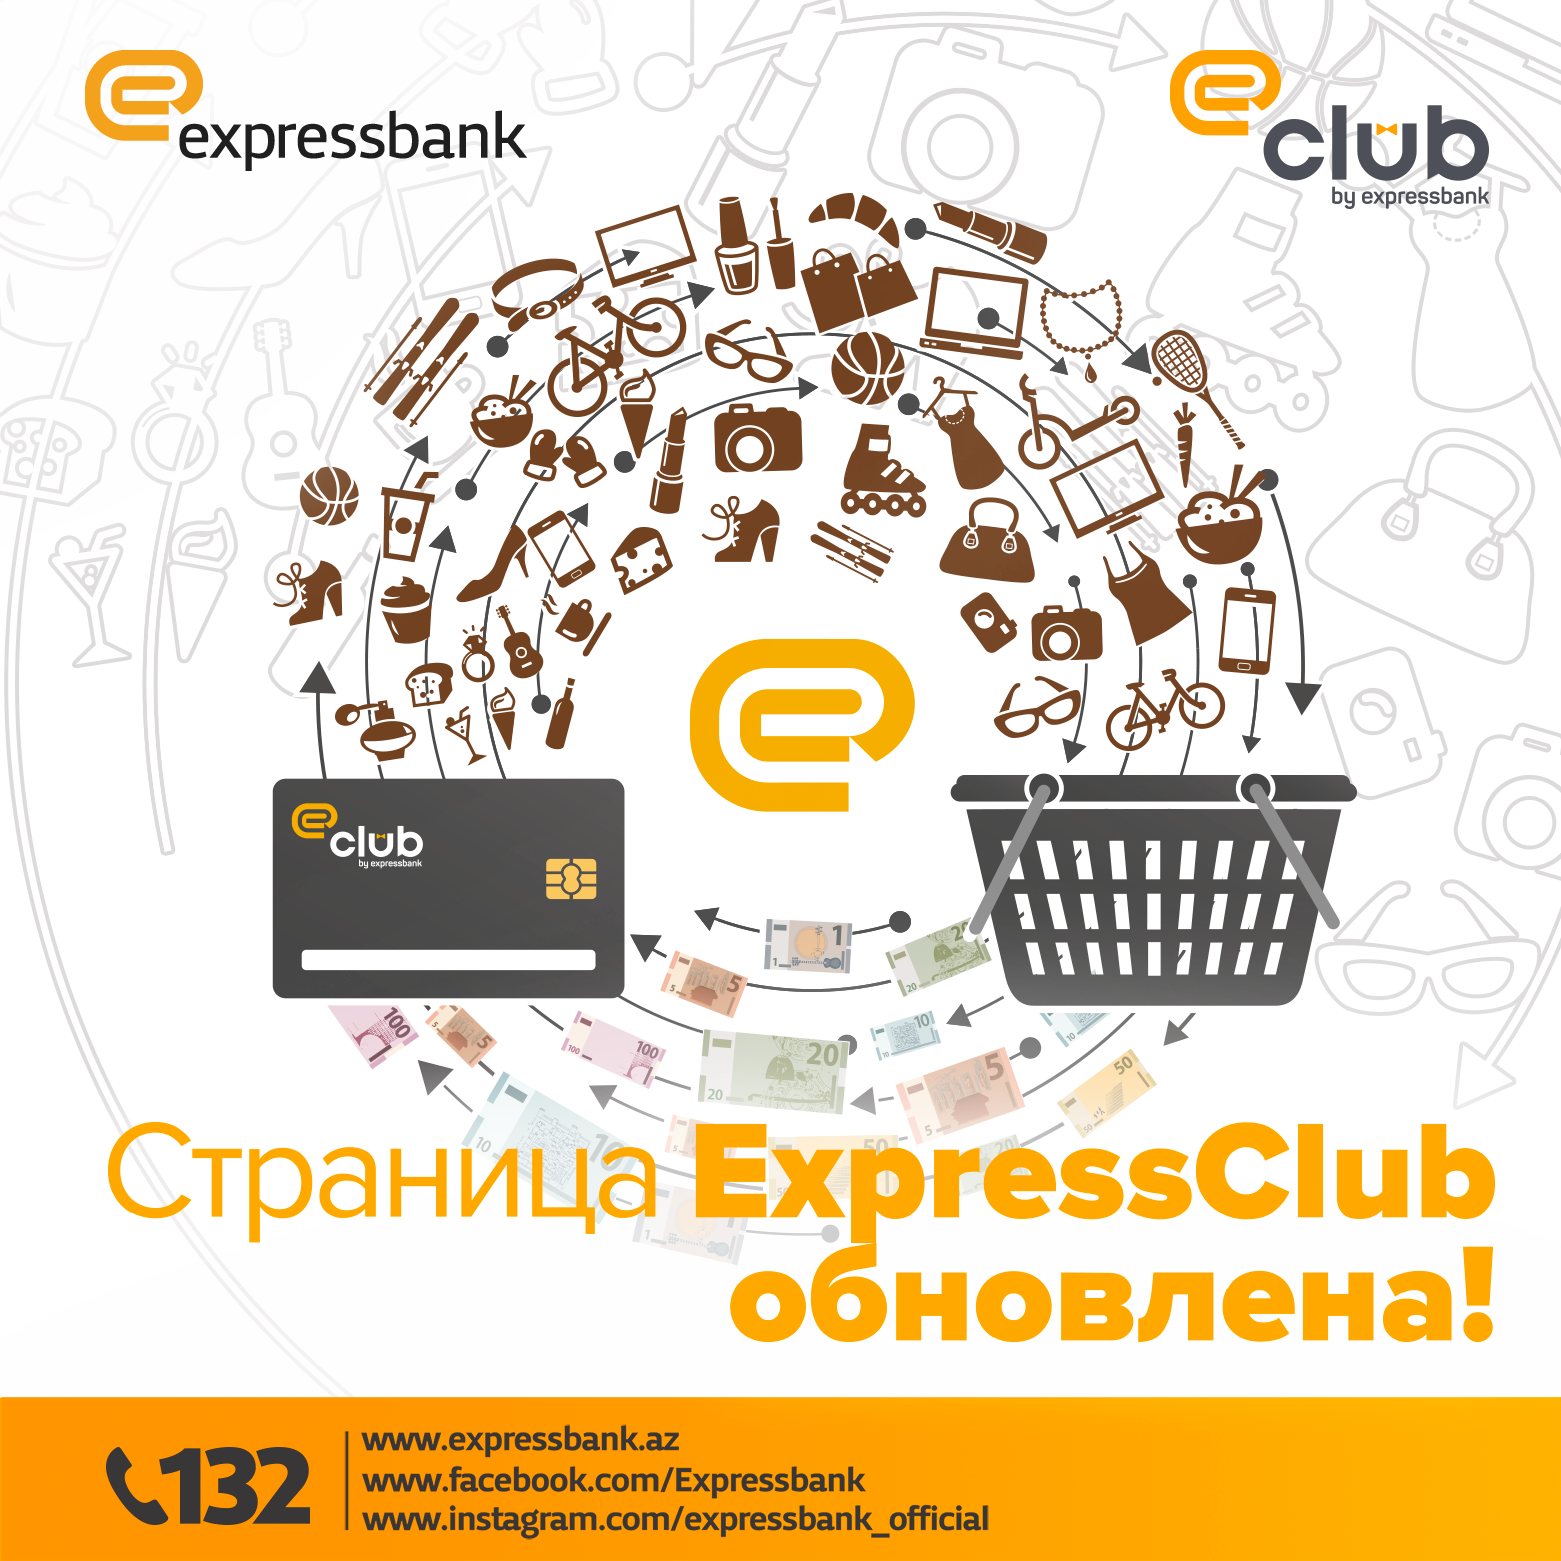 Express Bank. Обновление Clubhouse.